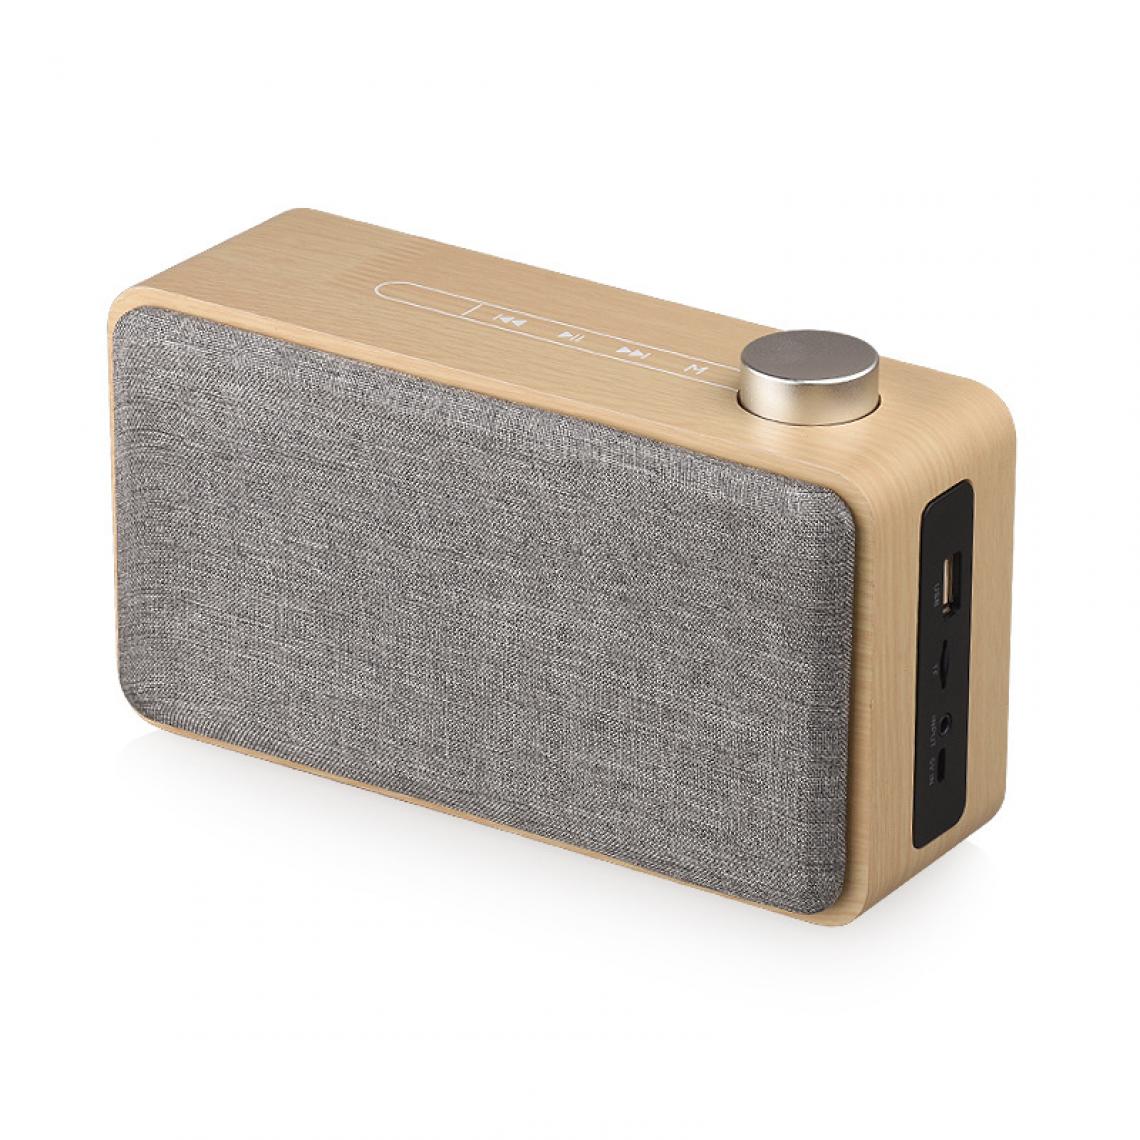 Universal - Haut-parleur Bluetooth portable en bois Subwoofer sans fil Boîte stéréo support lecteur de musique | Haut-parleur portable (grain de bois jaune) - Enceinte PC